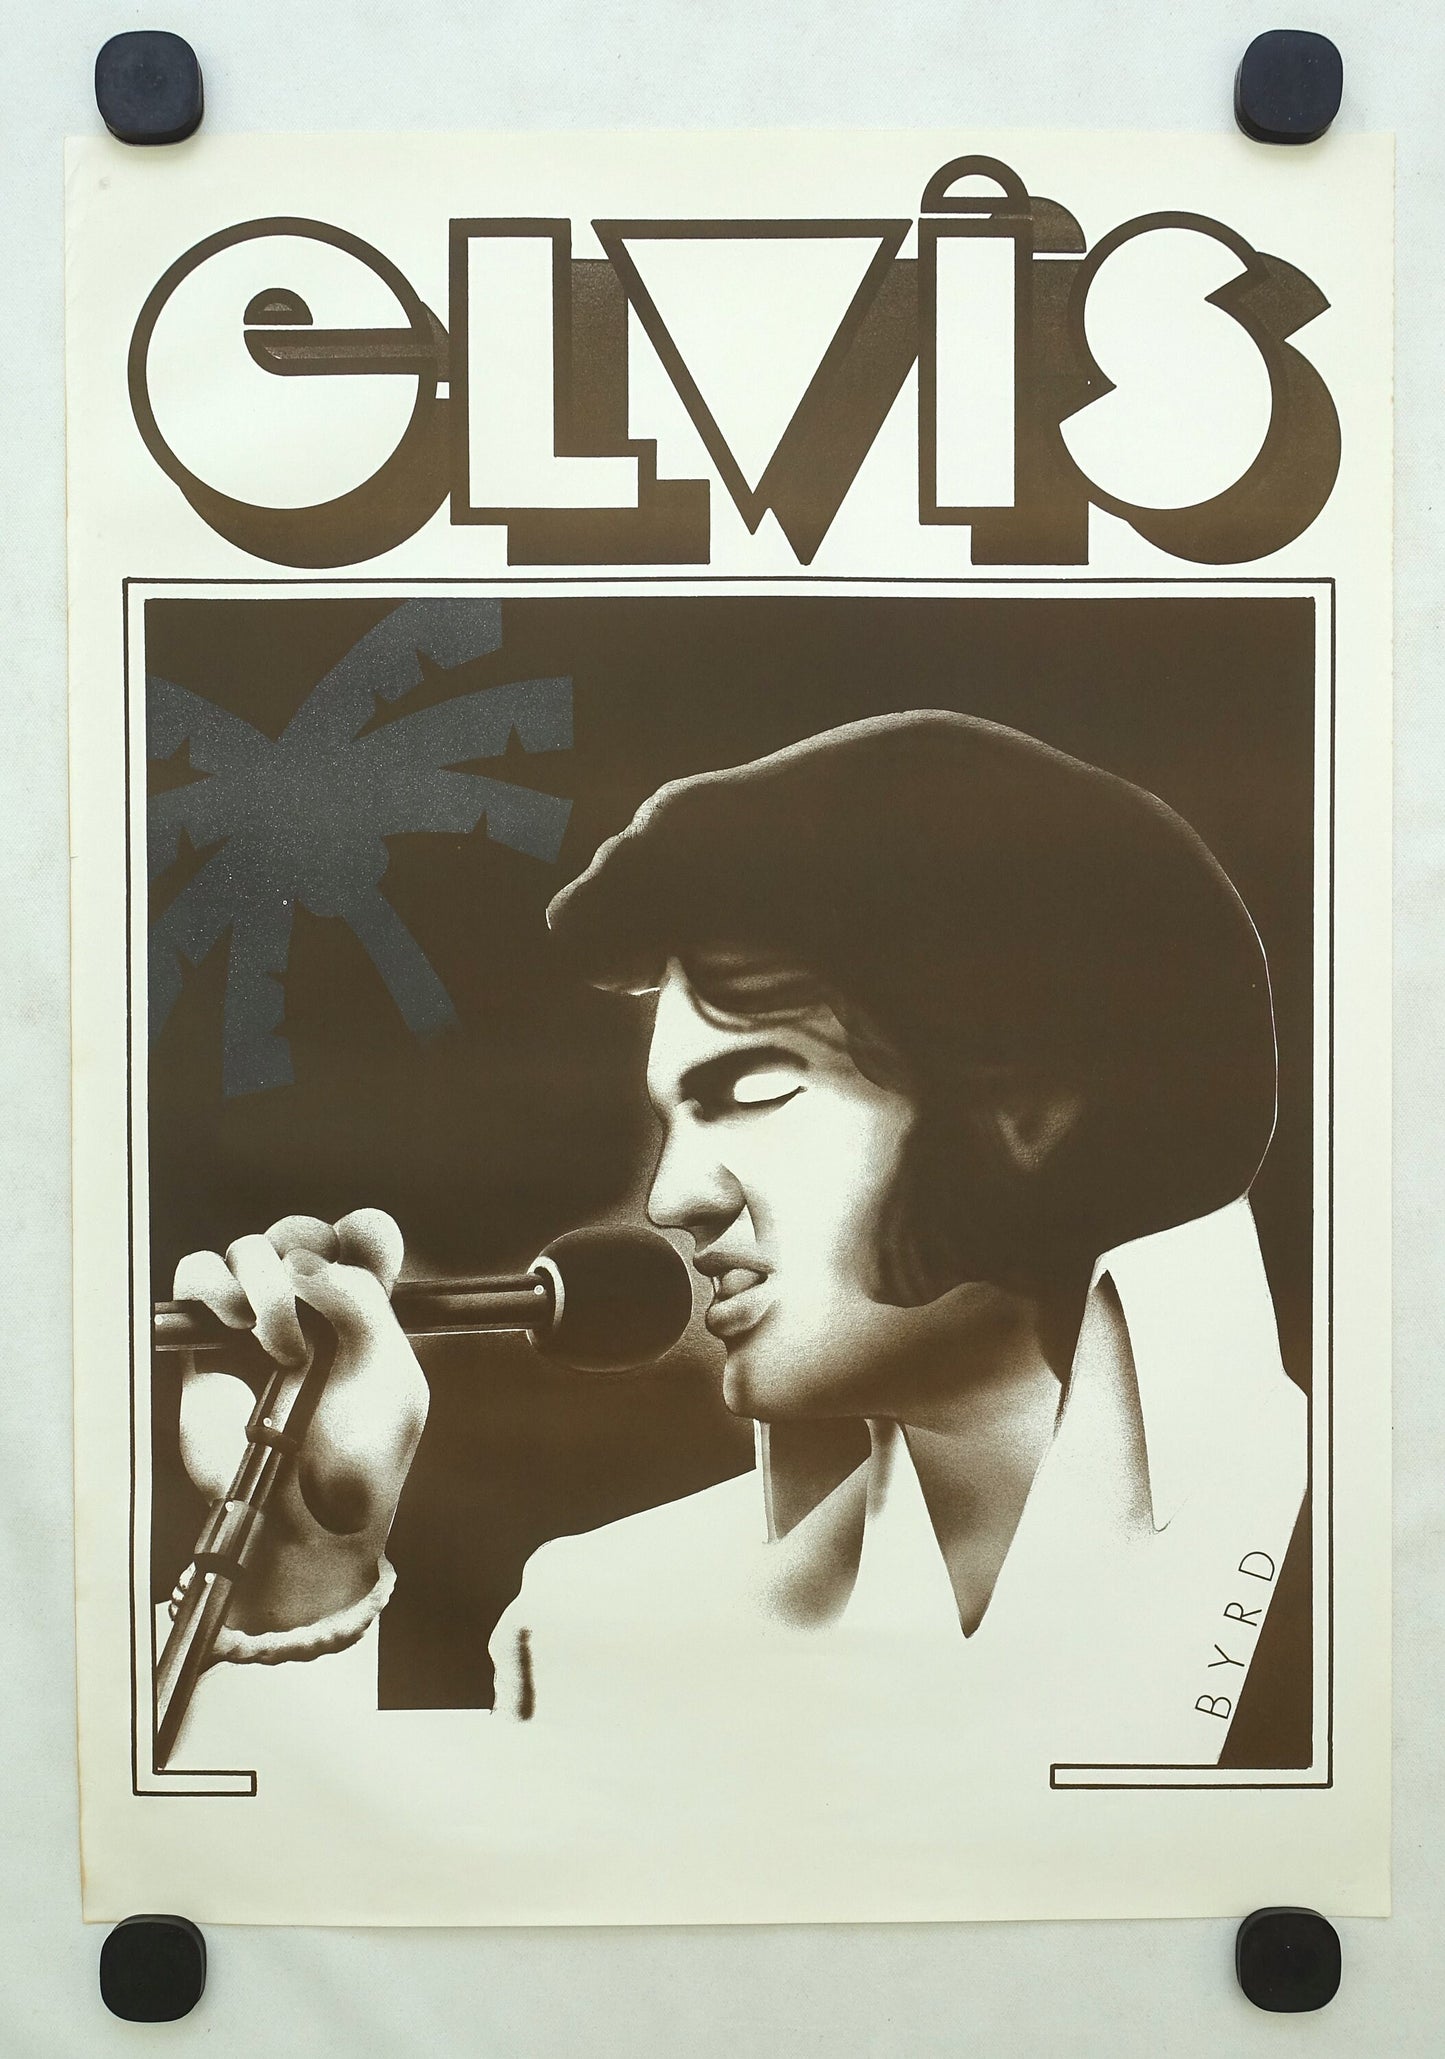 1970s Elvis Concert Poster by Byrd - Original Vintage Poster